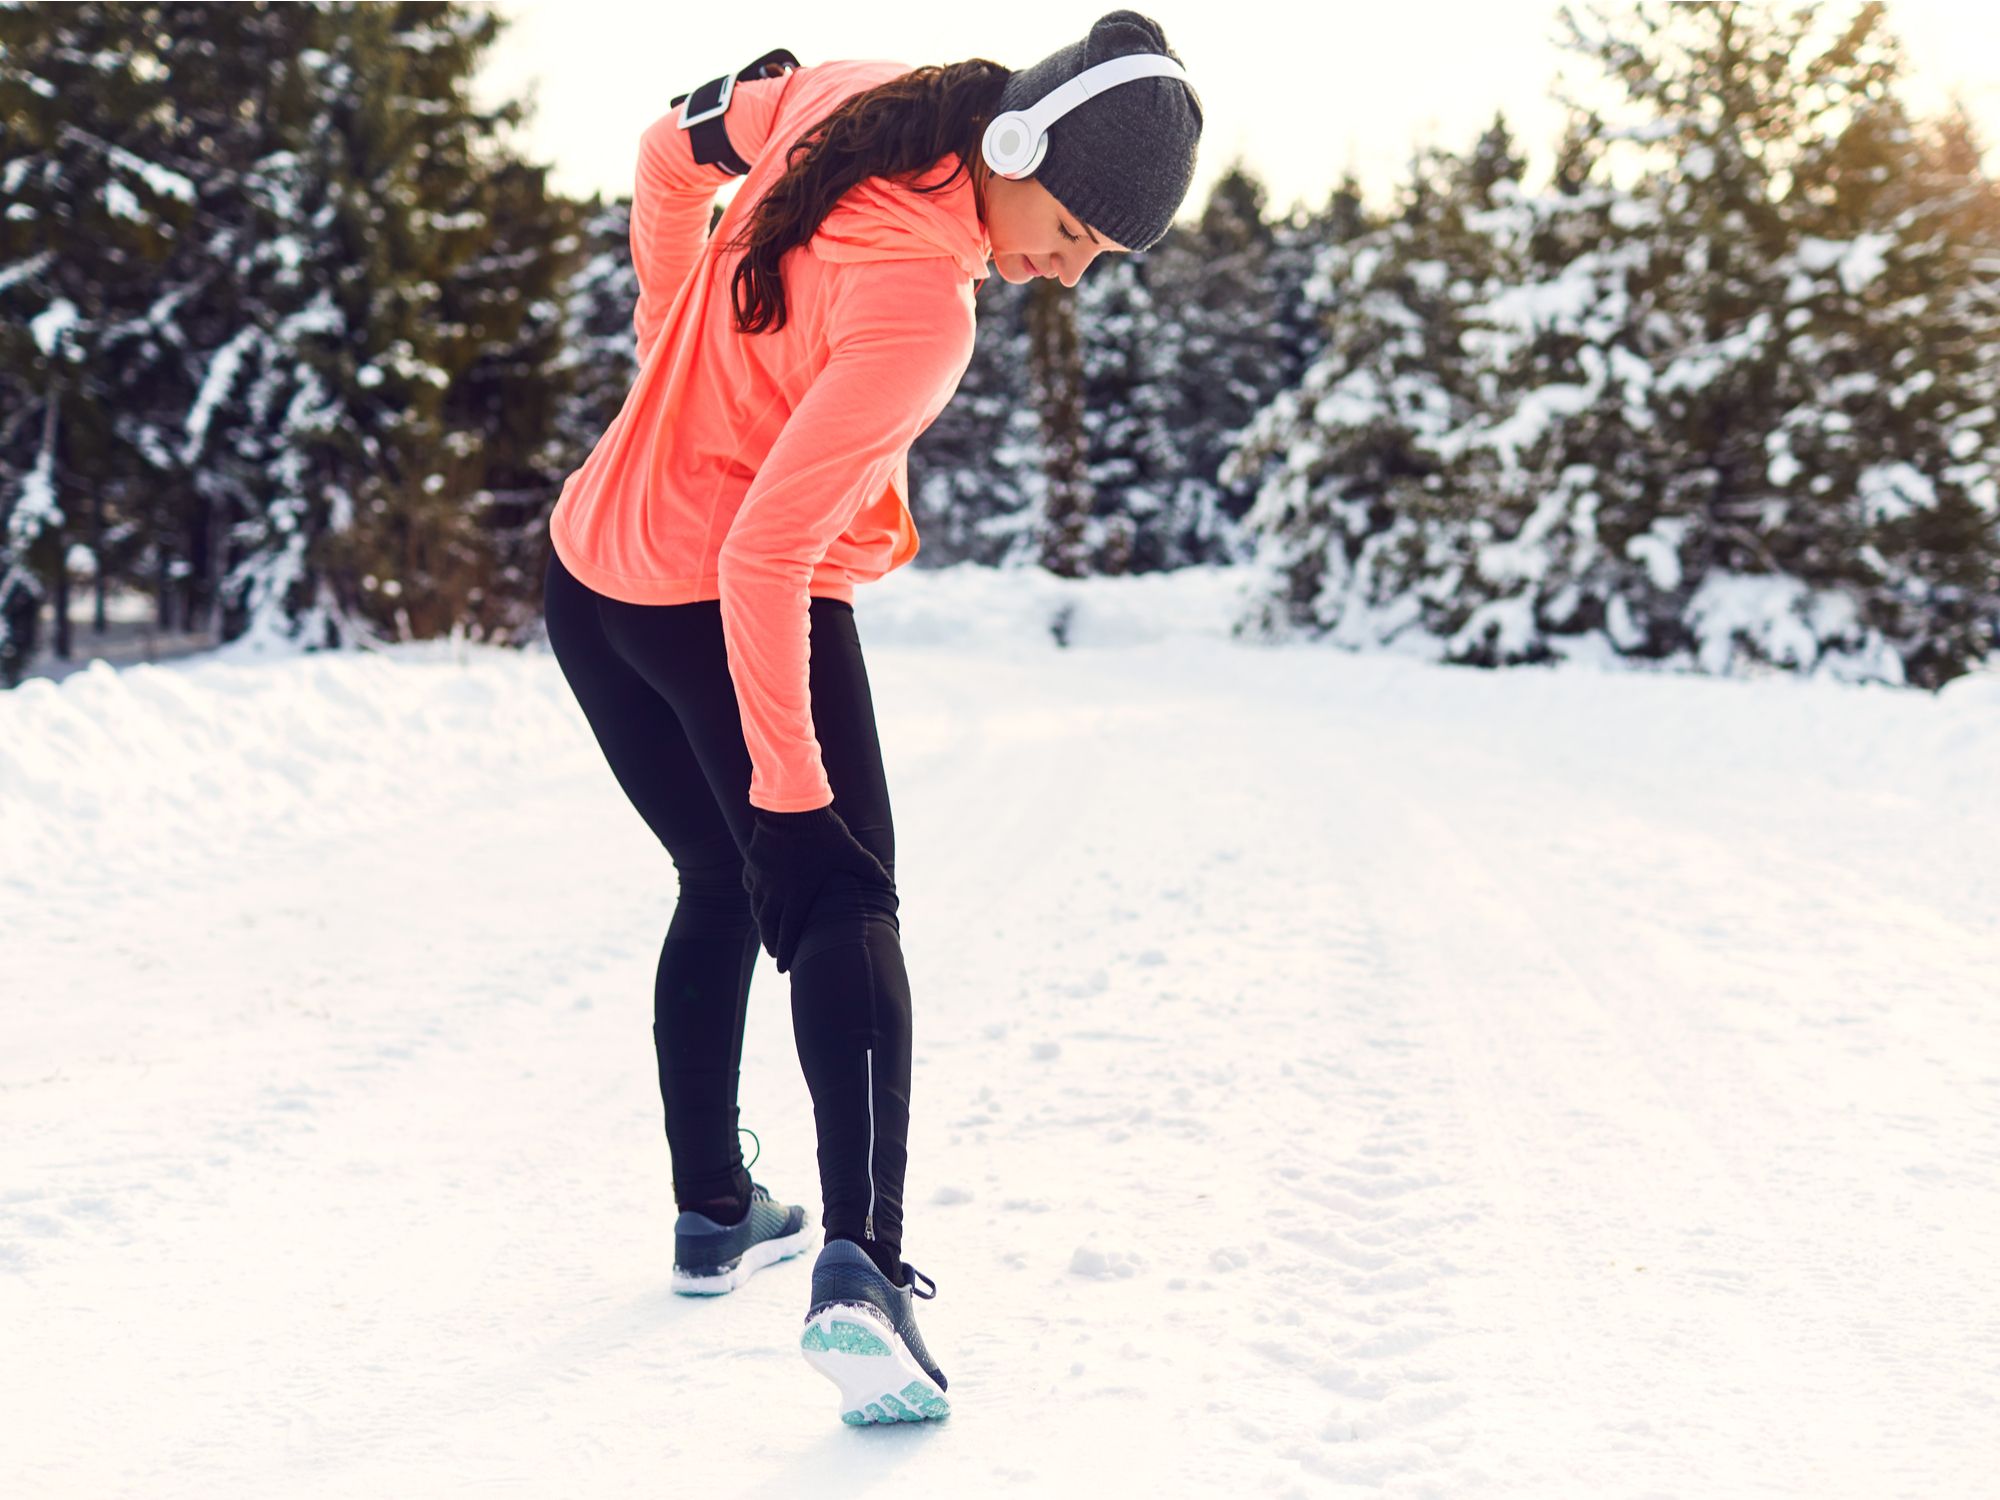 Tips for Avoiding Winter Injuries